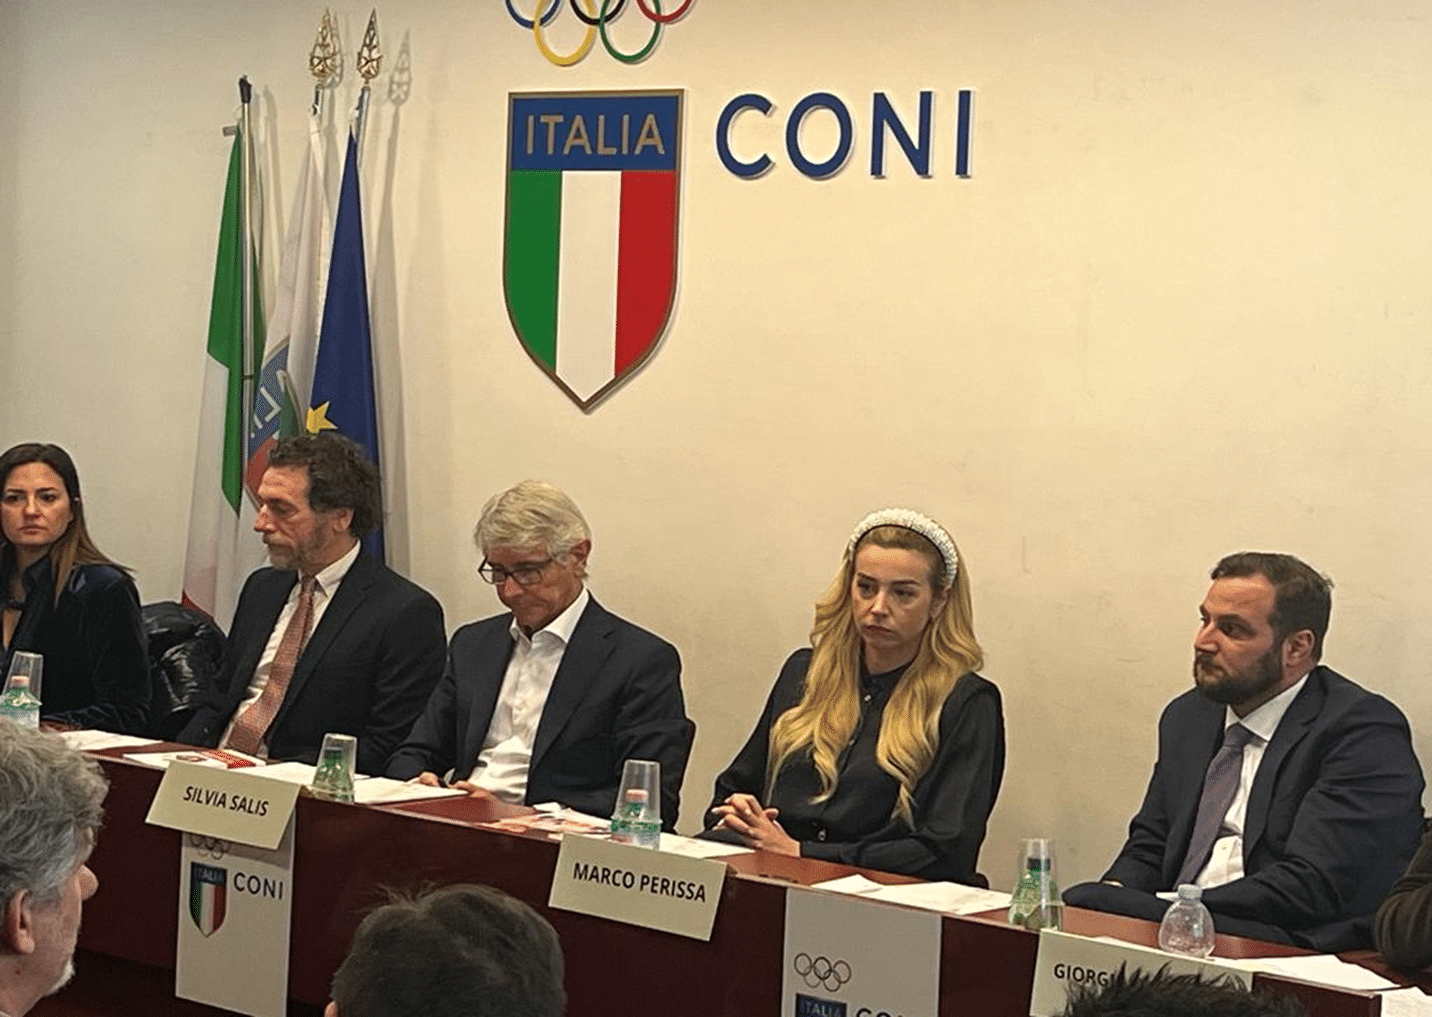 شهادة كويزر: اللجنة الأولمبية الوطنية الإيطالية تؤكد اهتمامها بشهادة مكافحة التنمر في التخصصات الرياضية